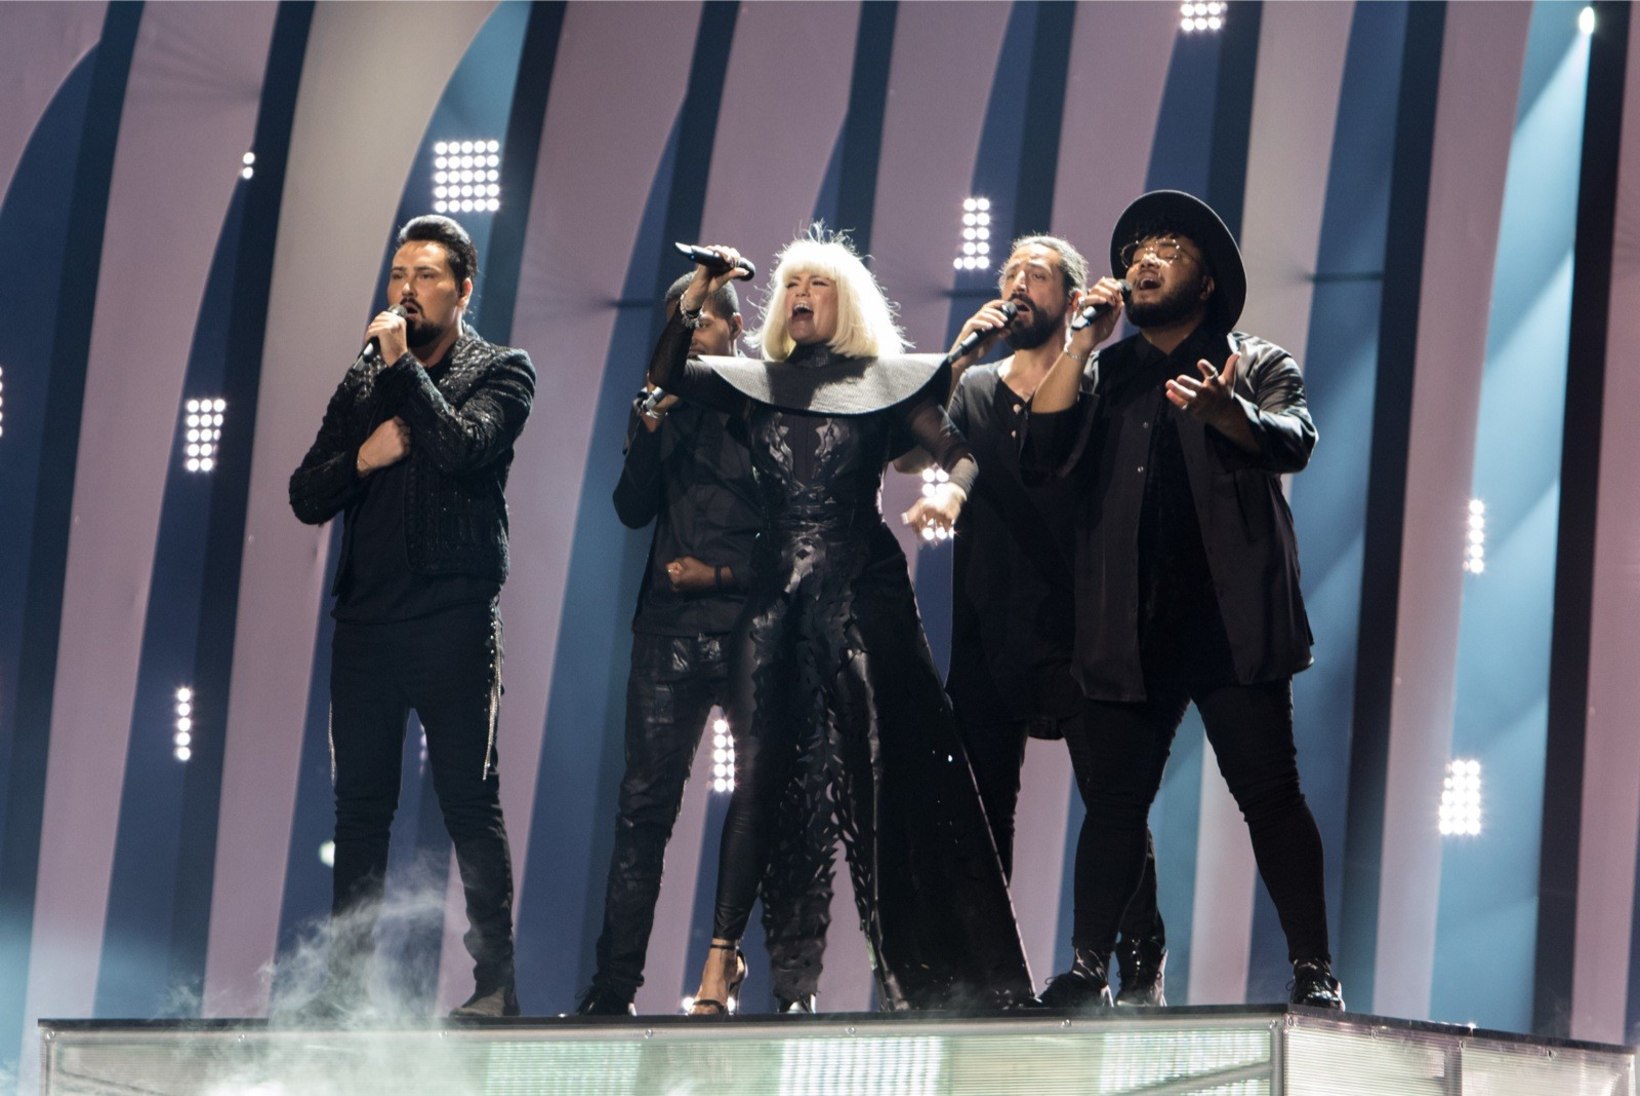 Bulgaaria loobus Eurovisionil osalemisest